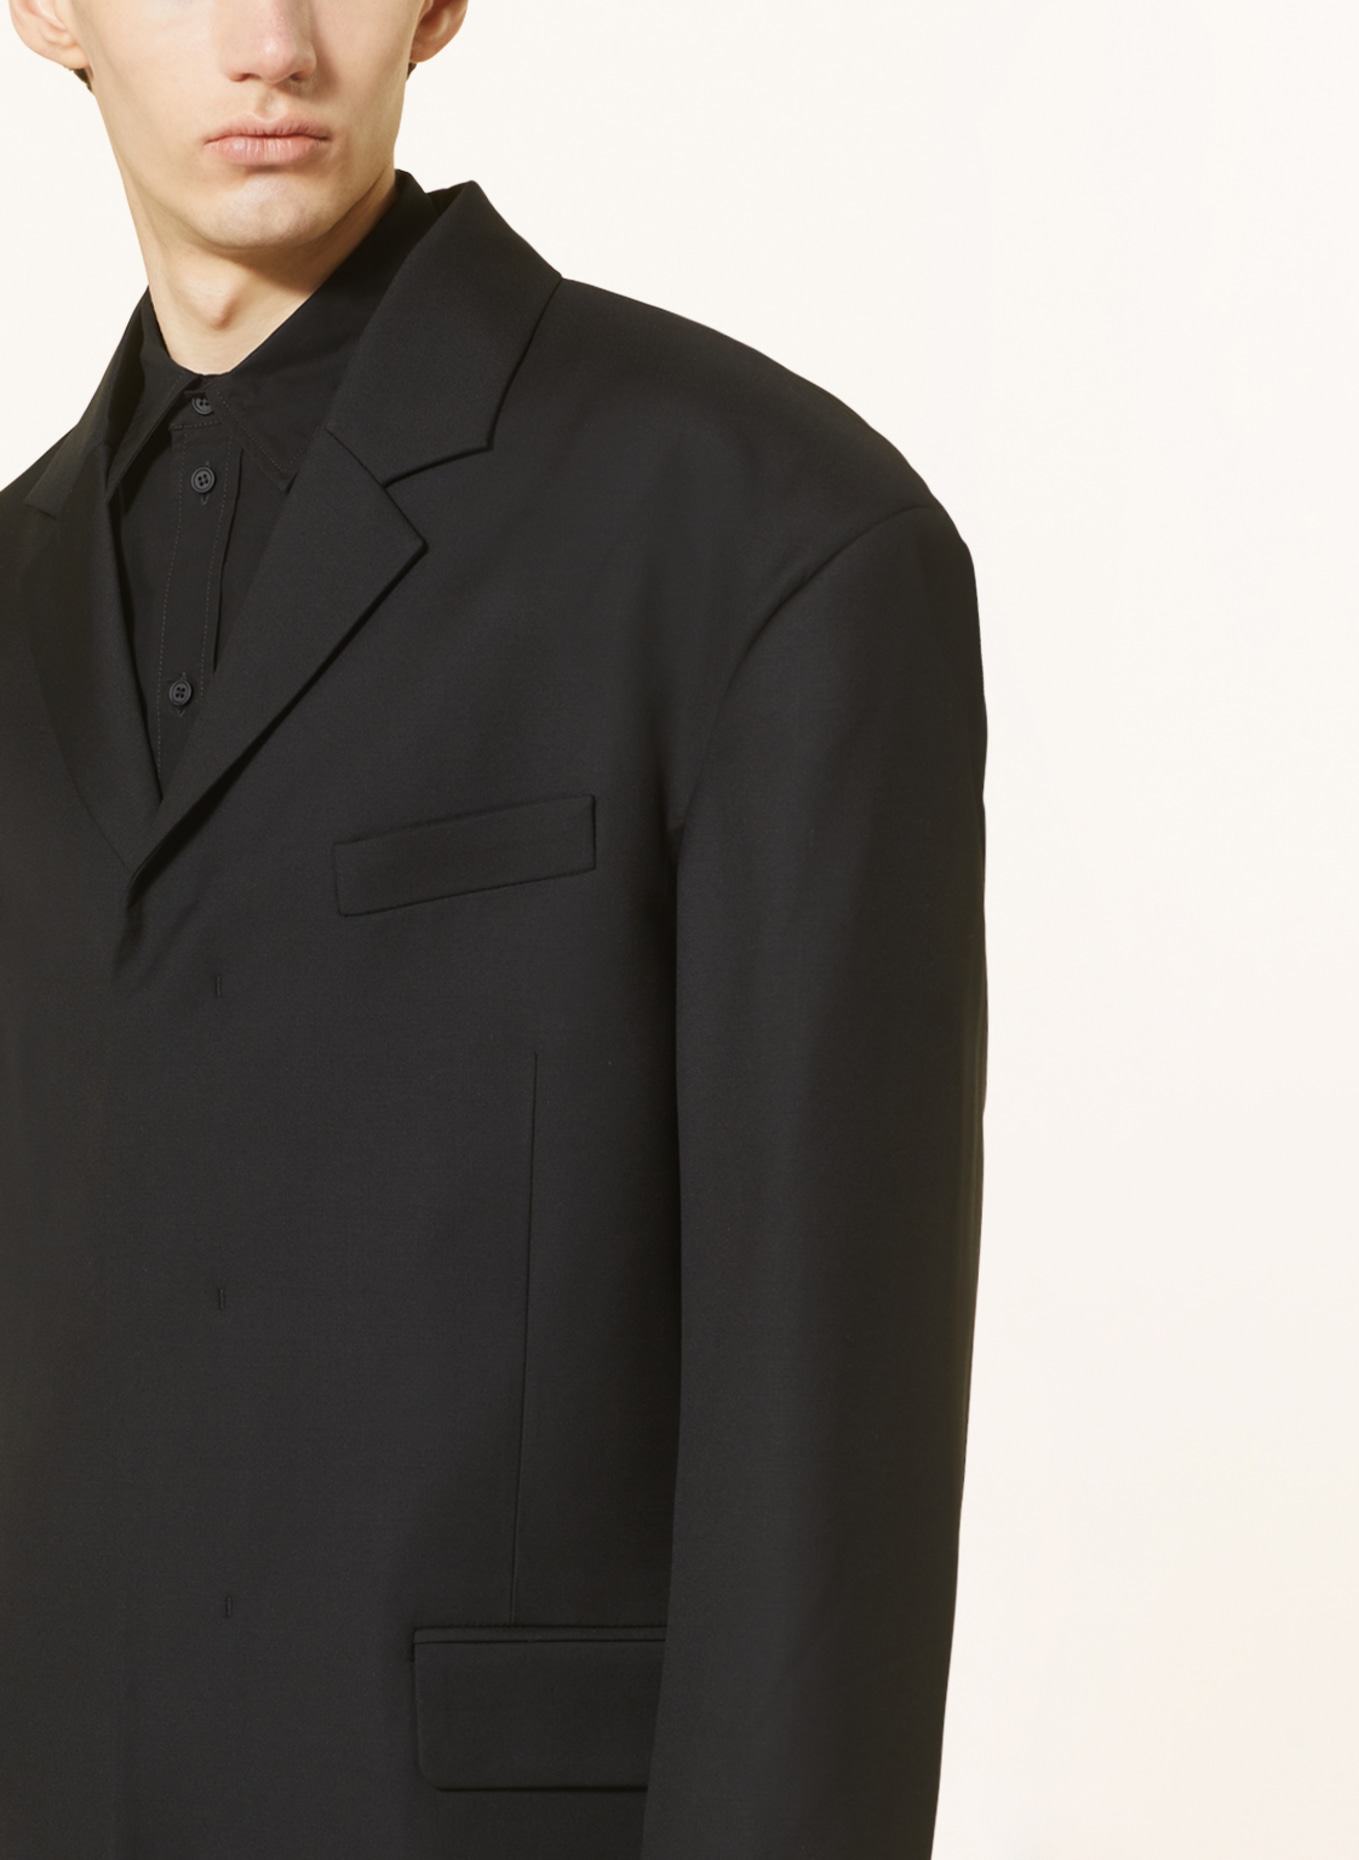 032c Tailored jacket ORION regular fit, Color: BLACK (Image 5)